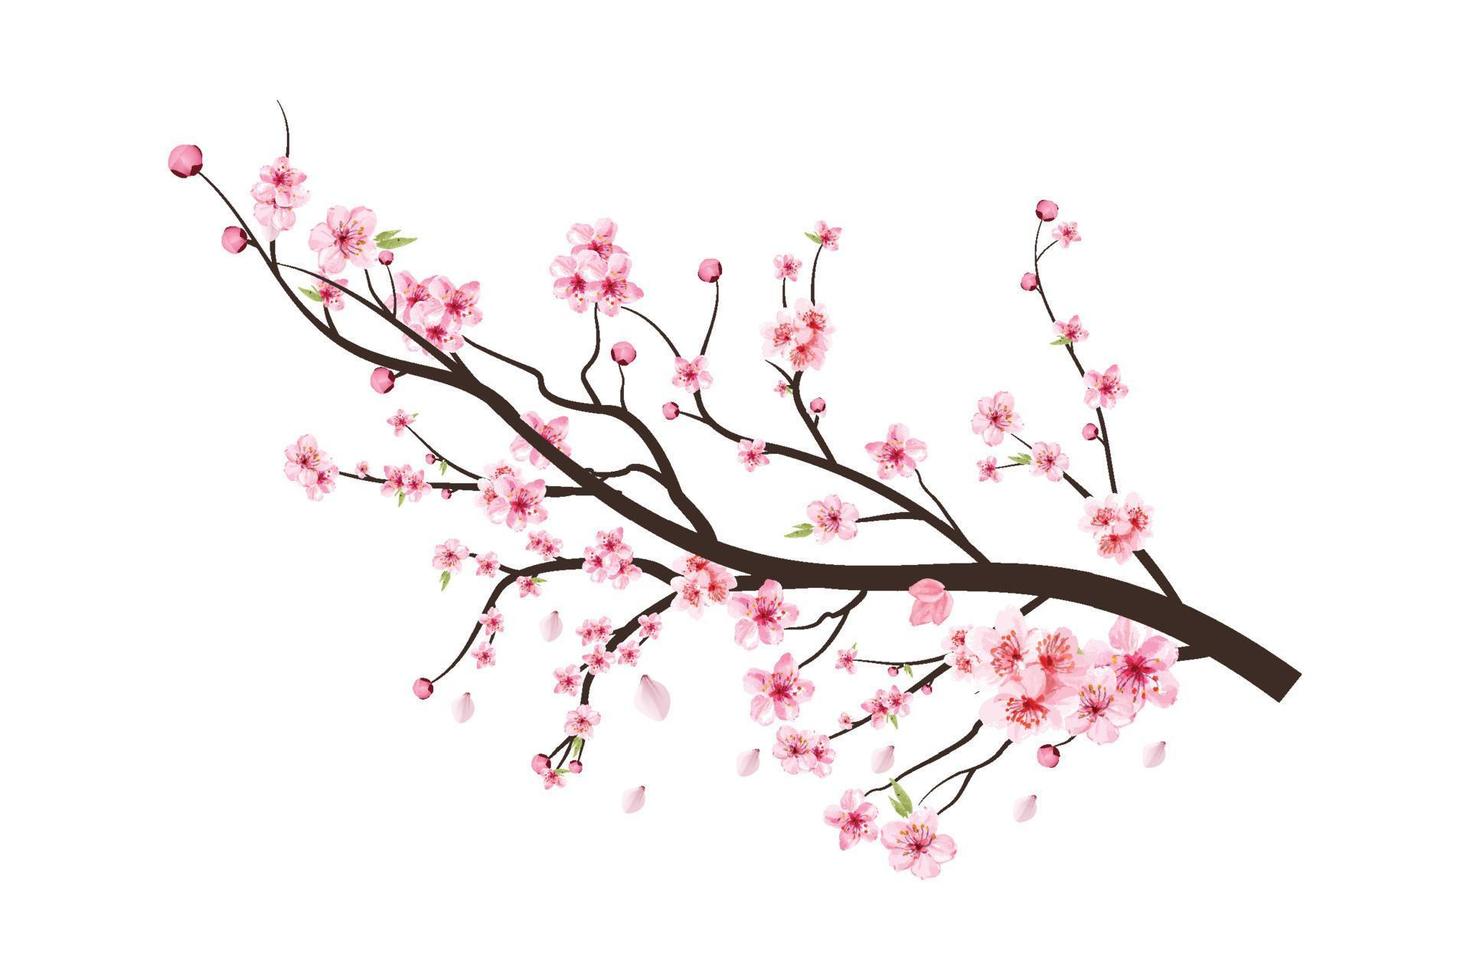 galho de árvore da flor de cerejeira com espalhando flor rosa. ramo de cerejeira com sakura. vetor de flores em aquarela. flor de cerejeira em aquarela. sakura em fundo branco. flor em fundo branco.